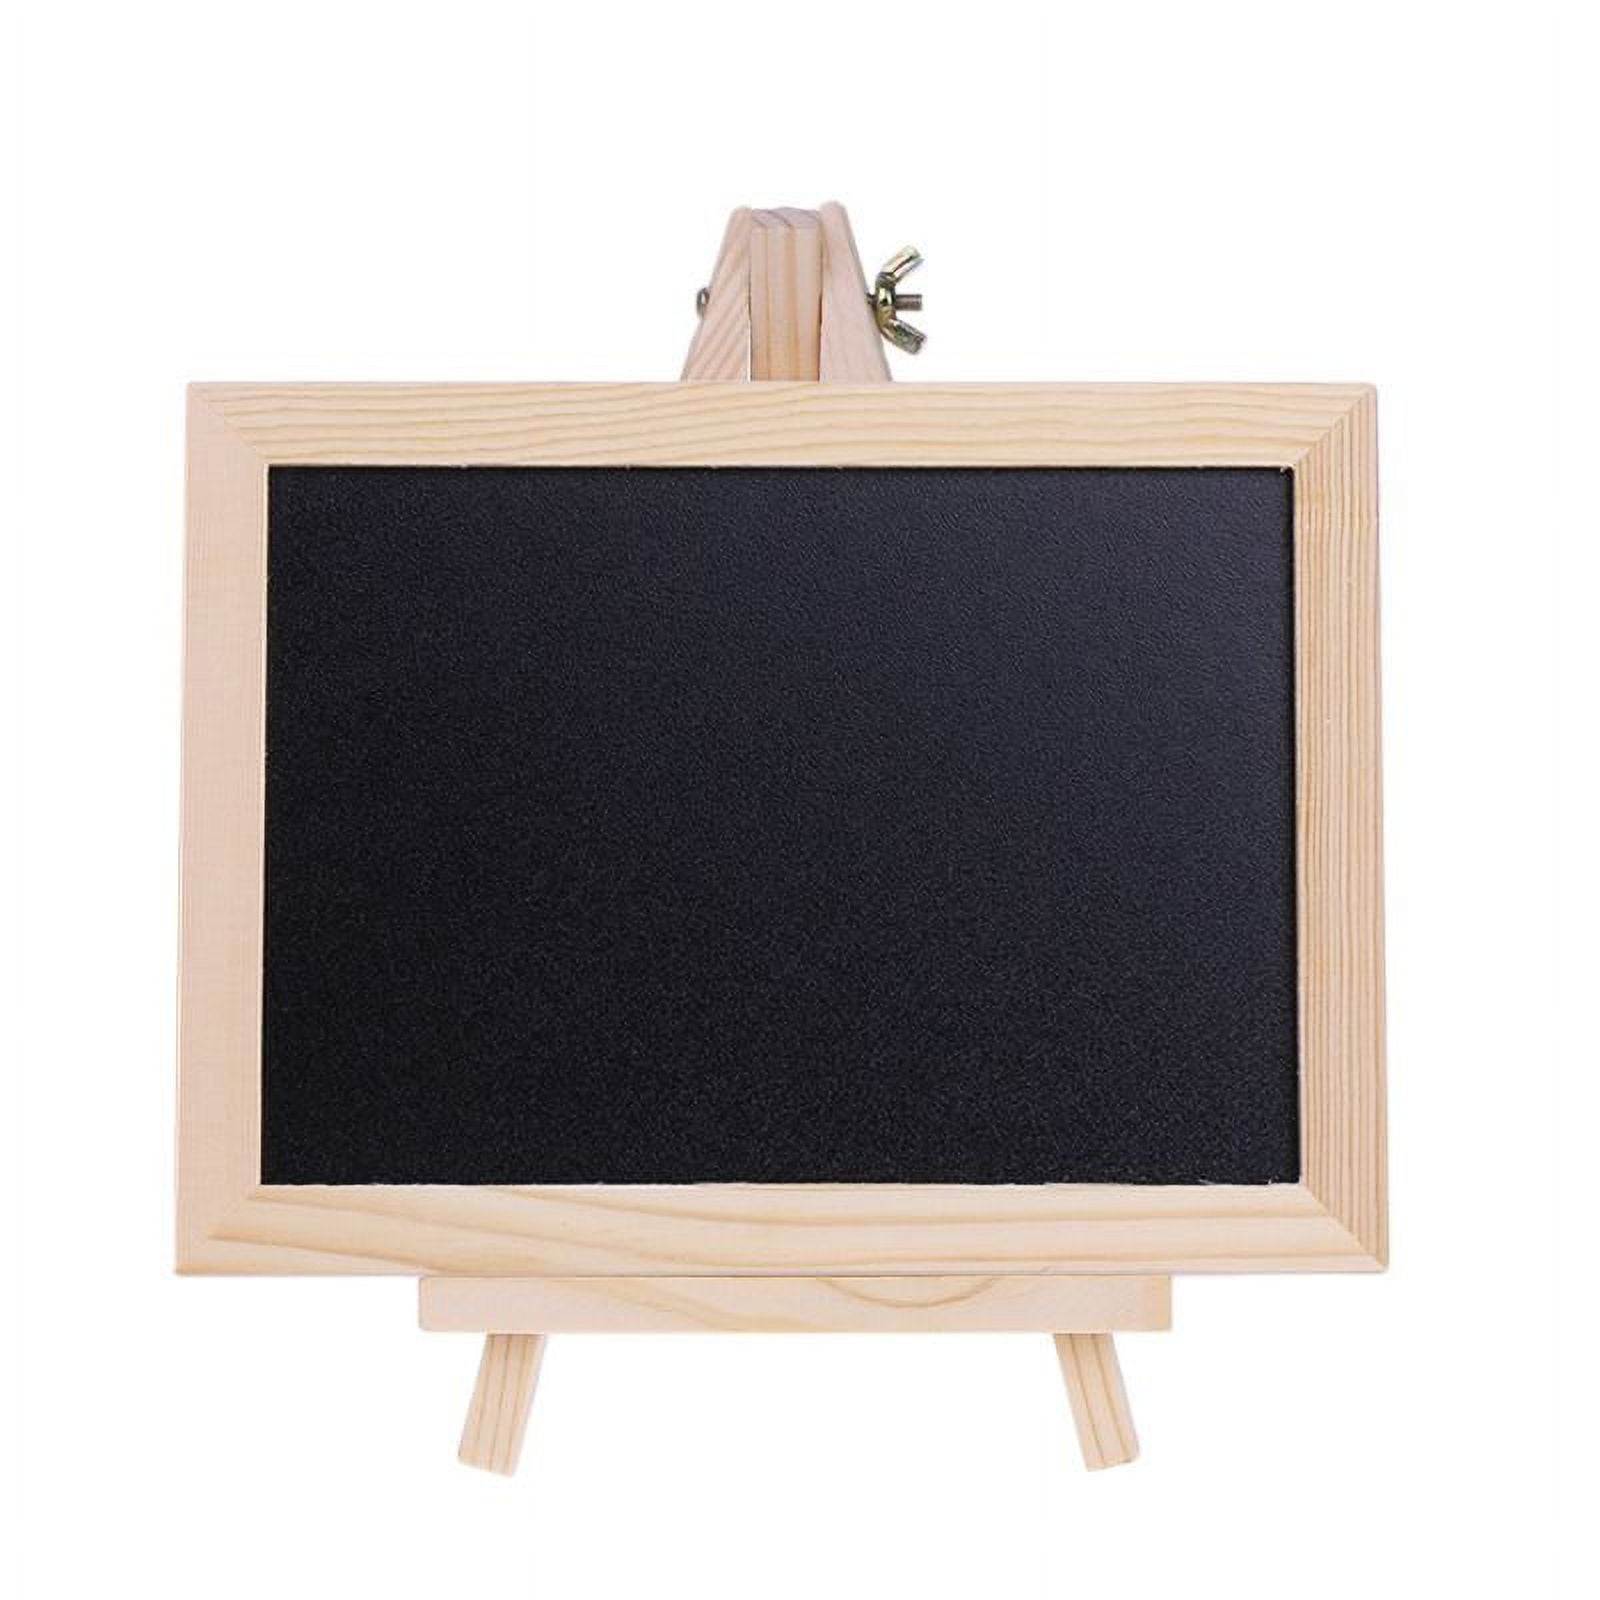 Wood Designs Tot Size Double Chalkboard Easel